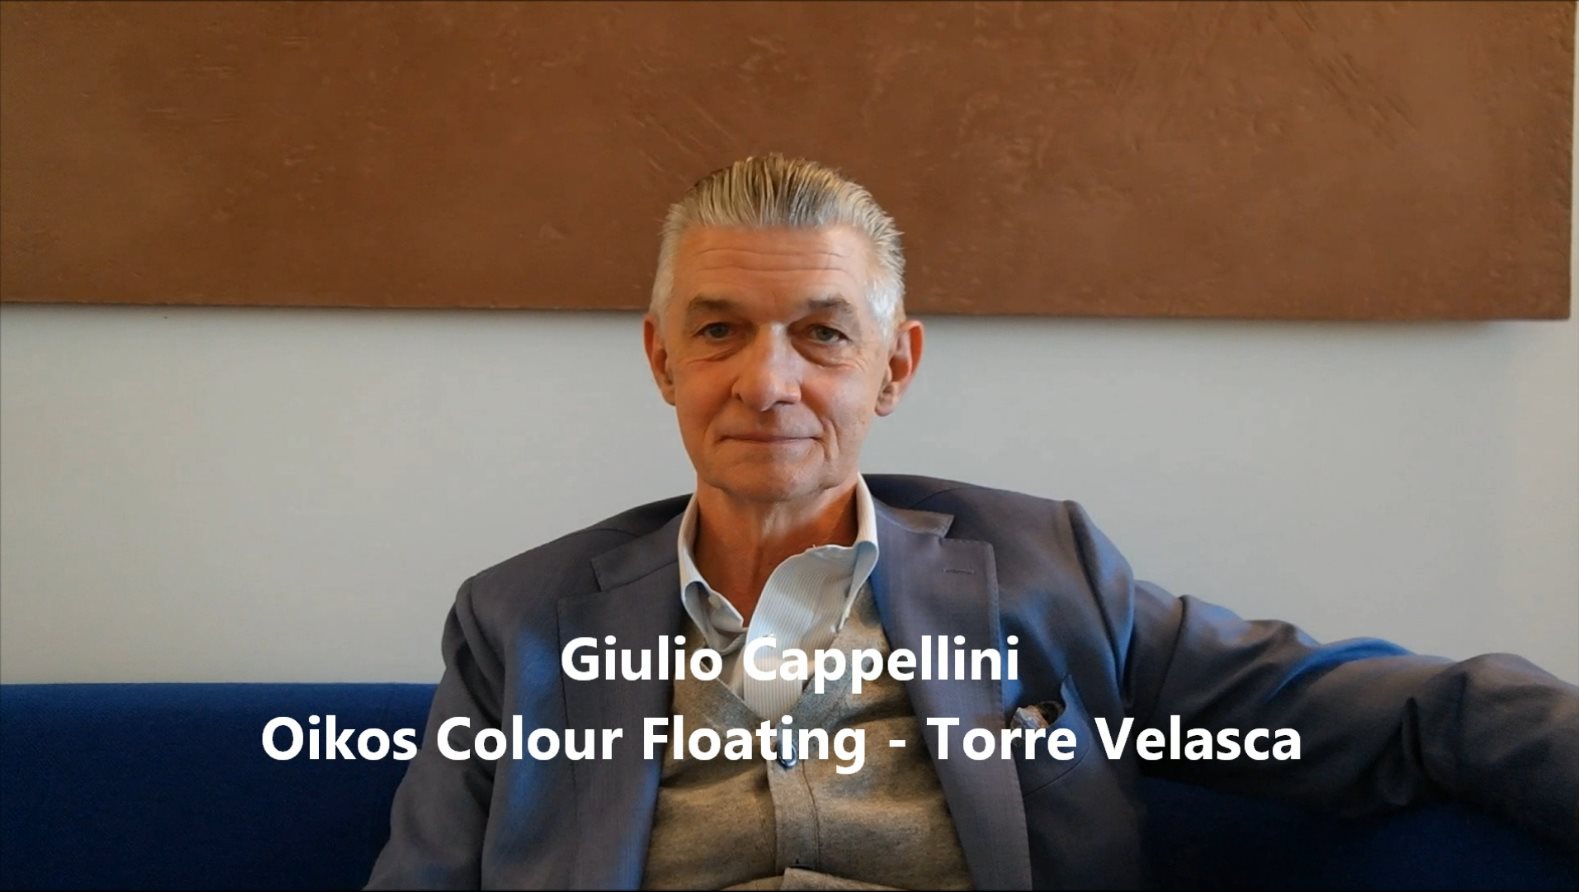 Fuorisalone 2016 Milano: intervista a Giulio Cappellini, la collezione colori Tiepolo di Oikos